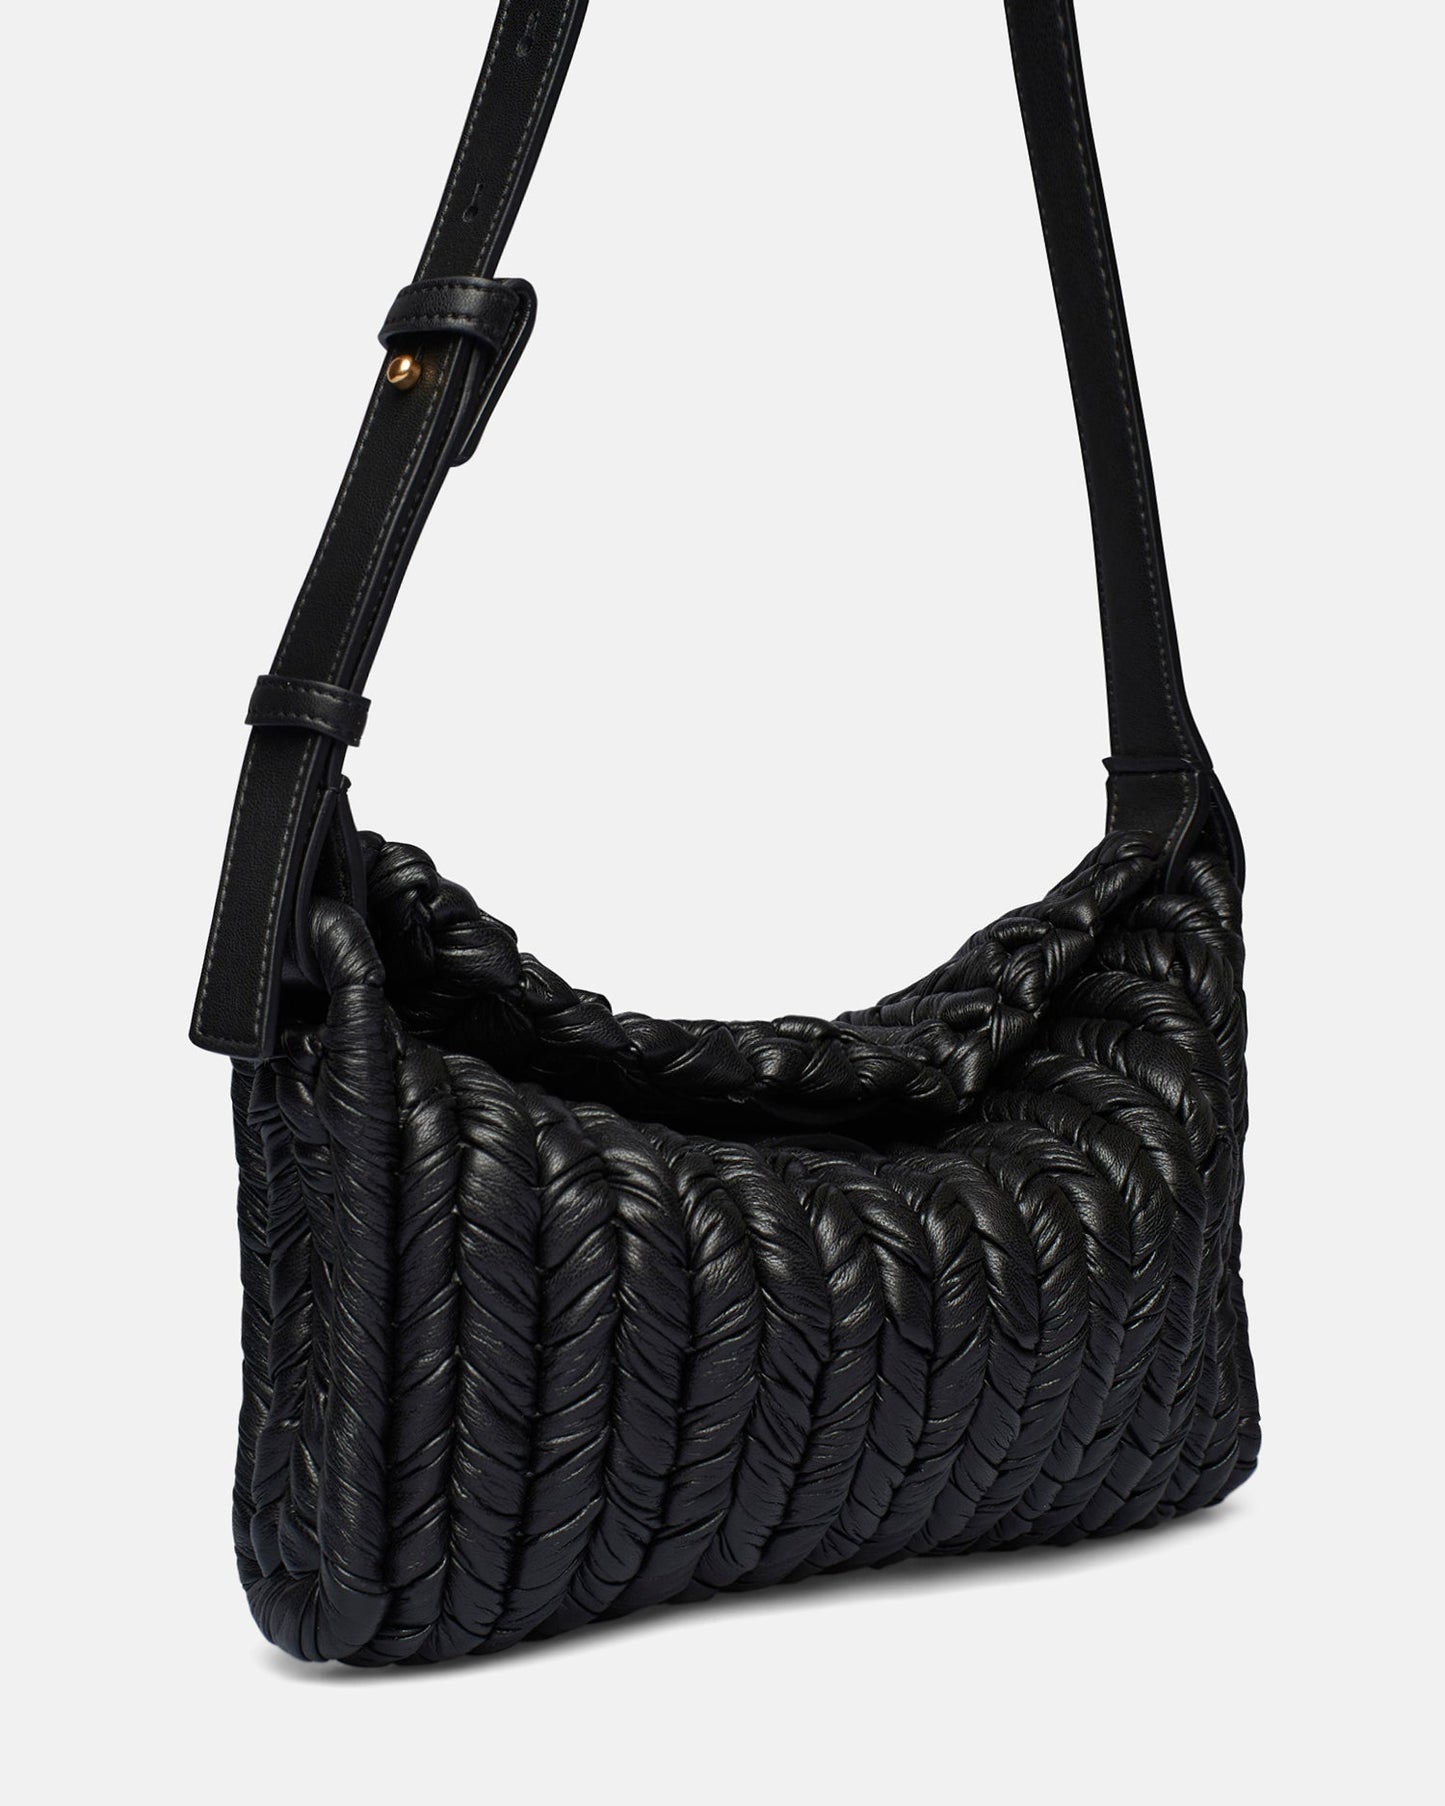 The Busket Bag - Knit Shoulder Bag - Black